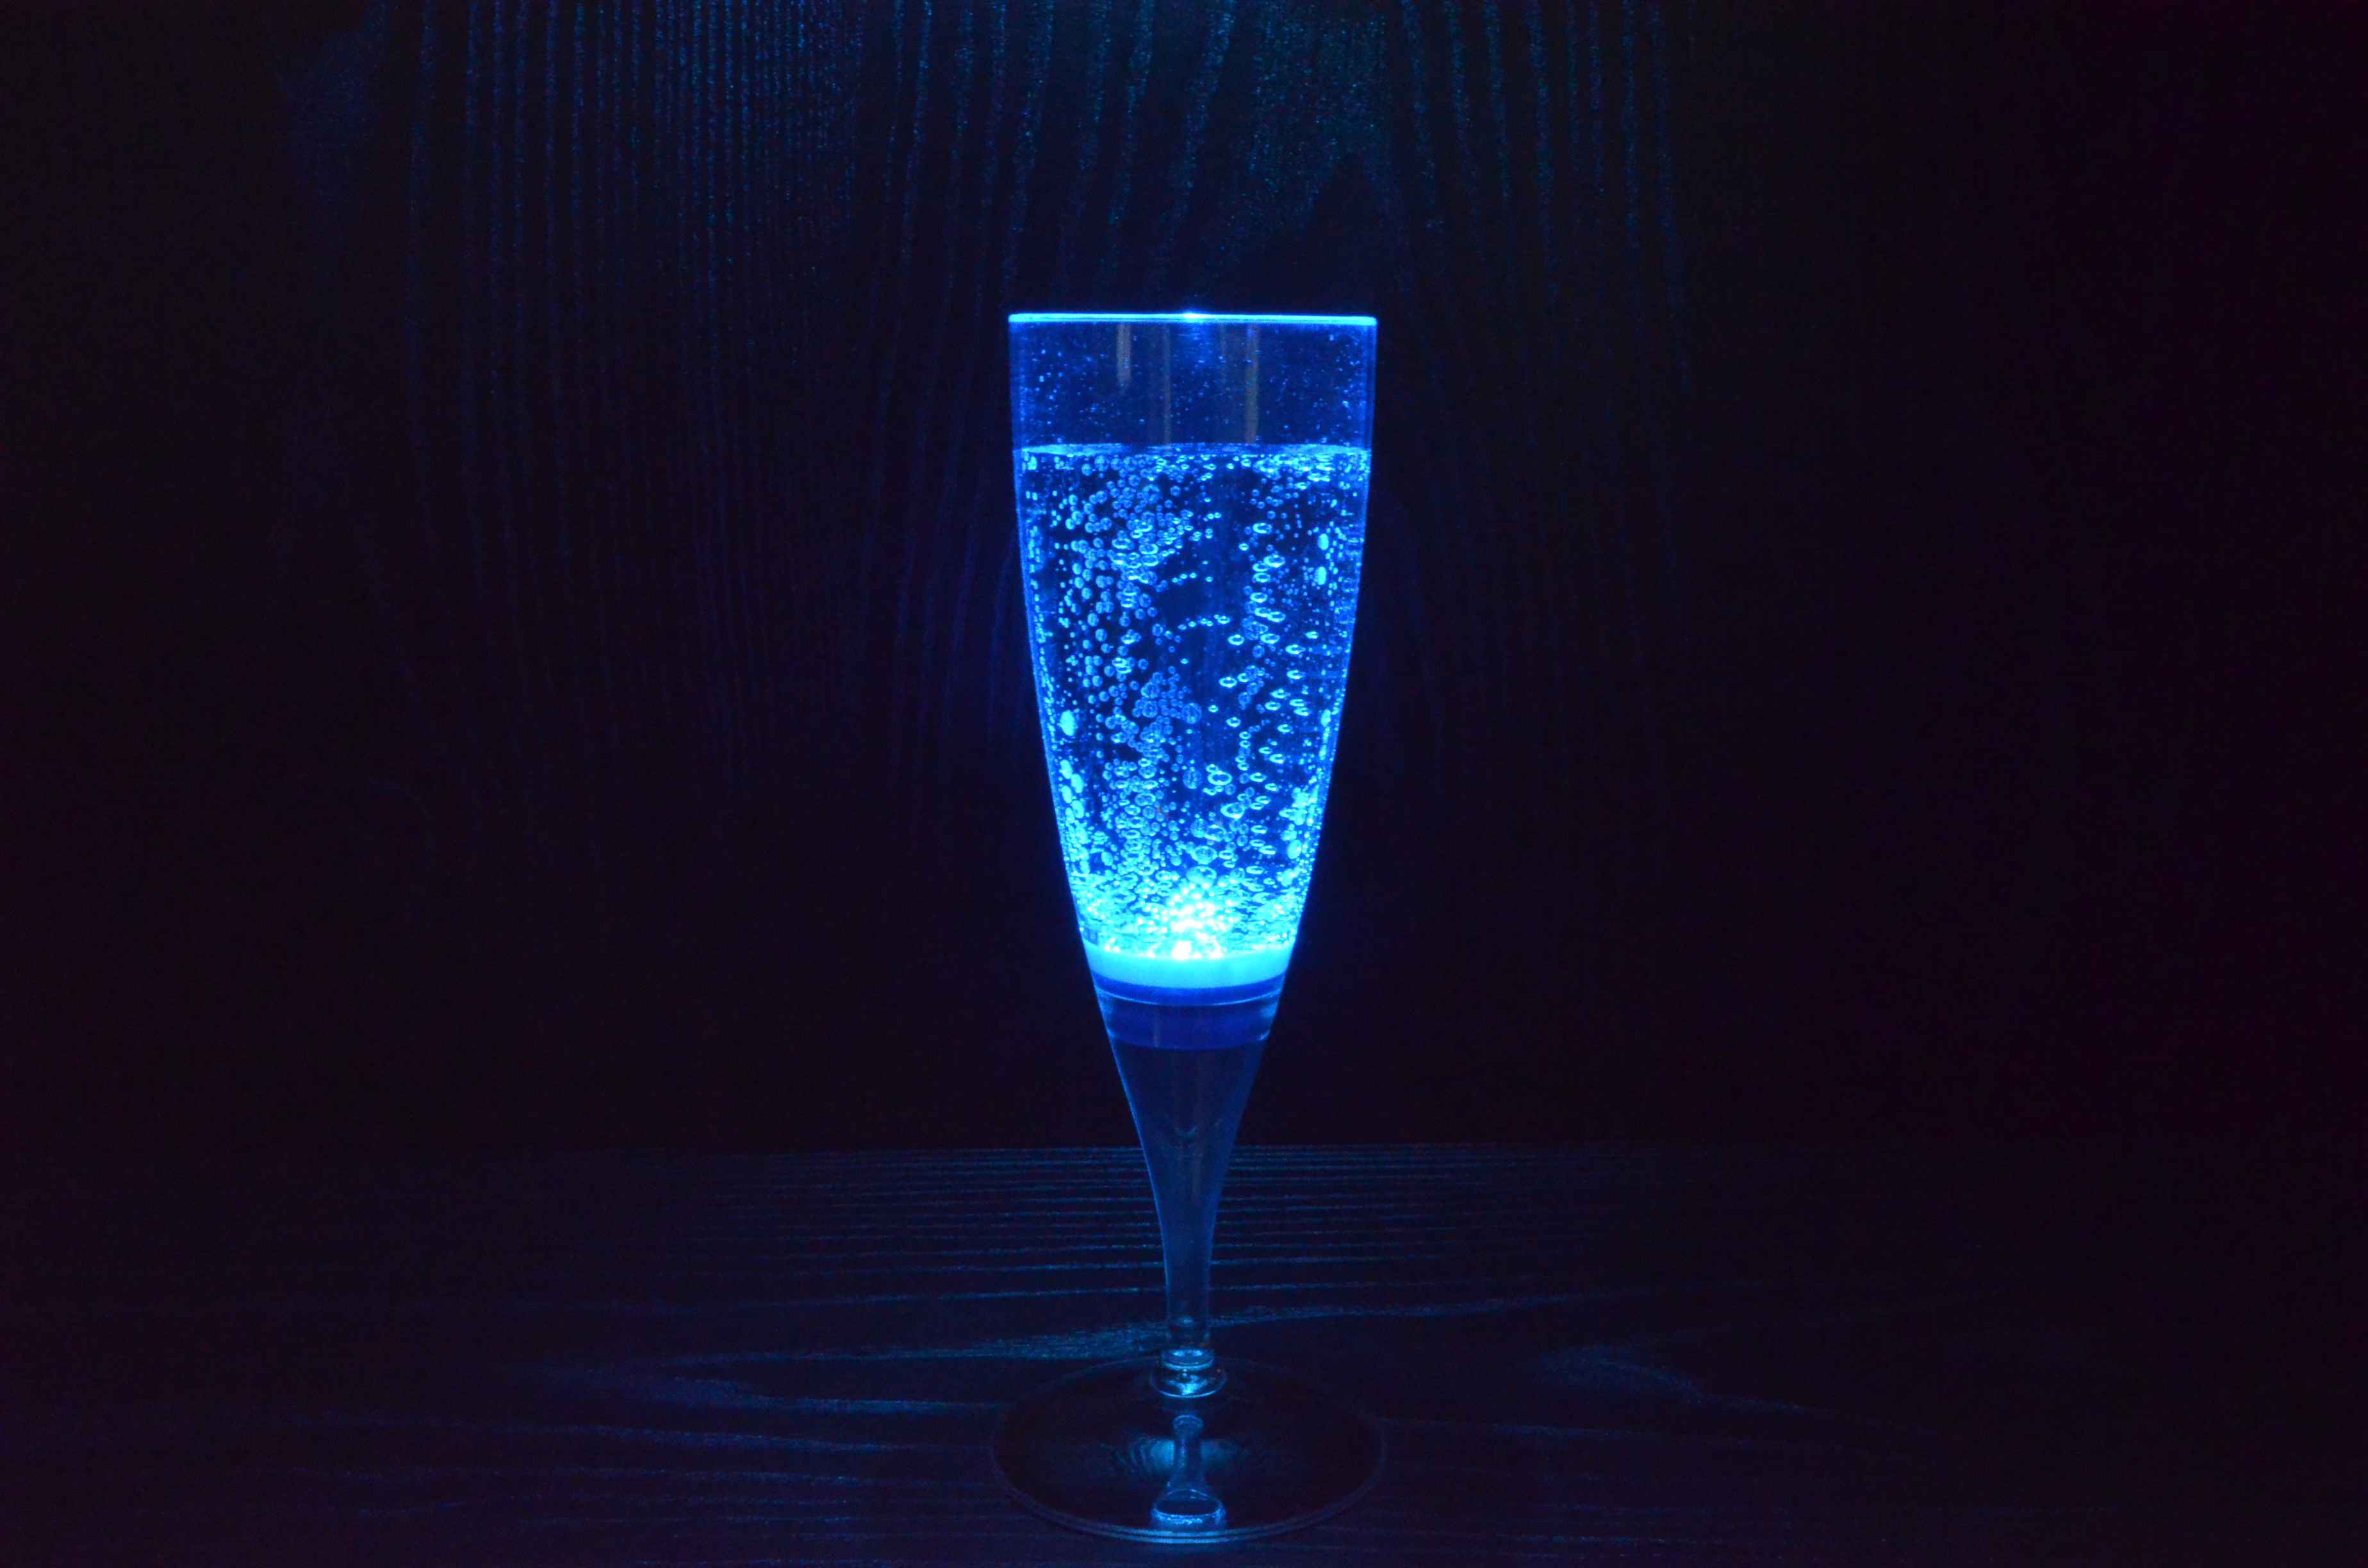 PRECORN 6 Stck LED Sektglas Set leuchtende Sektgläser beleuchtetes Party-Glas Trinkglas Geburtstag Silvester Hochzeit Einweihung Kunststoffglas 150 ml